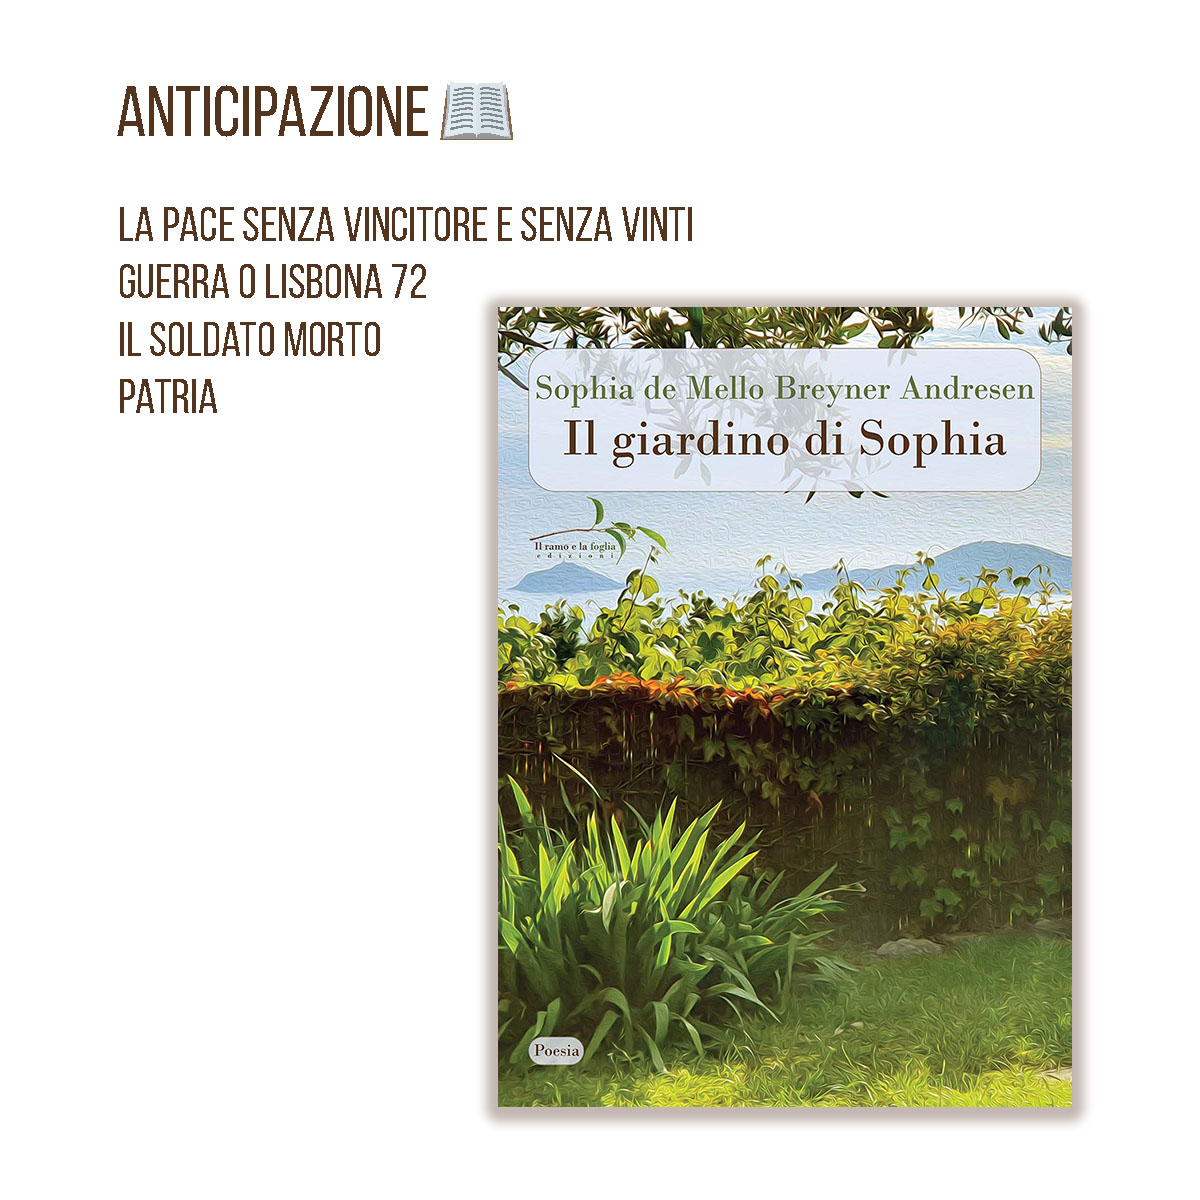 La copertina di “Il giardino di Sophia” e i titoli delle poesie anticipate